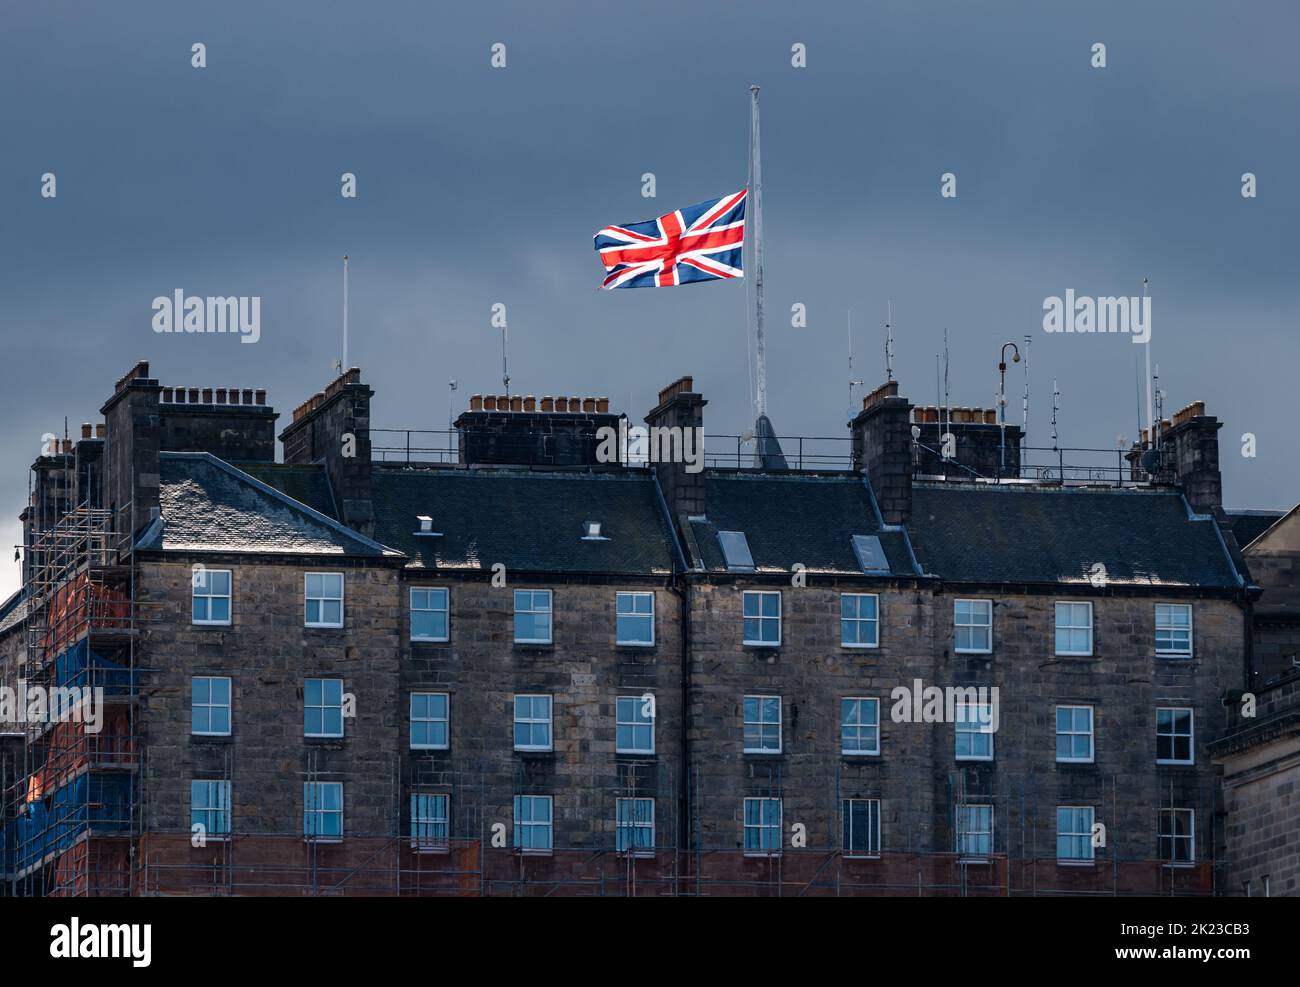 Drapeau Union Jack volant à mi-mât après la mort de HM Queen Elizabeth II sur le toit du bâtiment du centre-ville d'Édimbourg, Écosse, Royaume-Uni Banque D'Images